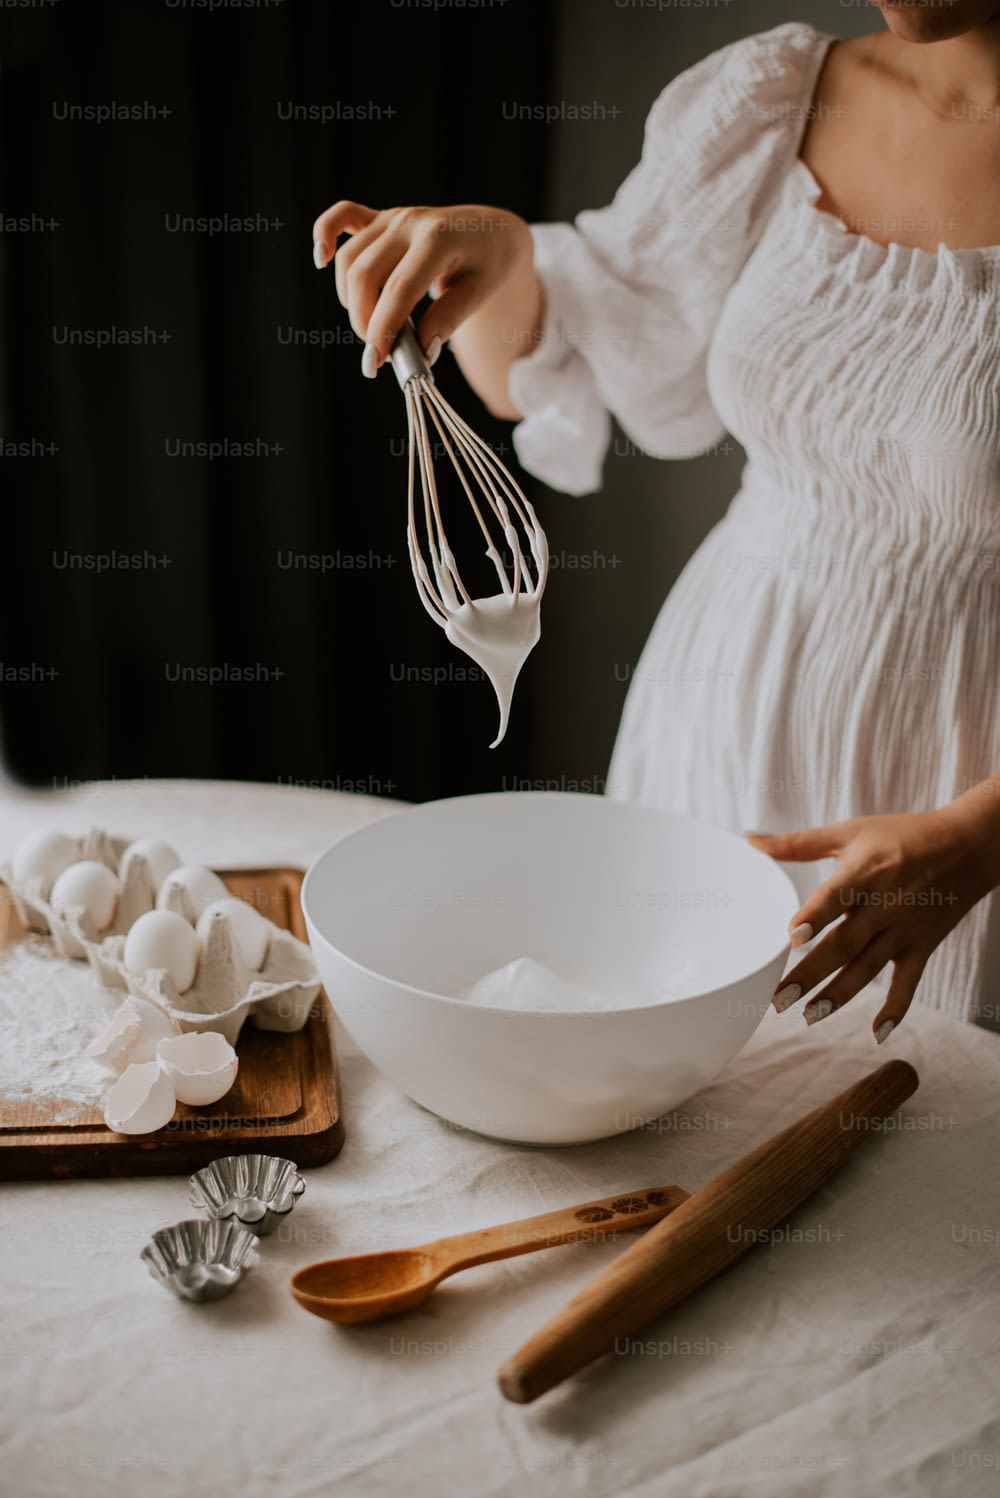 Uma mulher em um vestido branco bate ovos em uma tigela